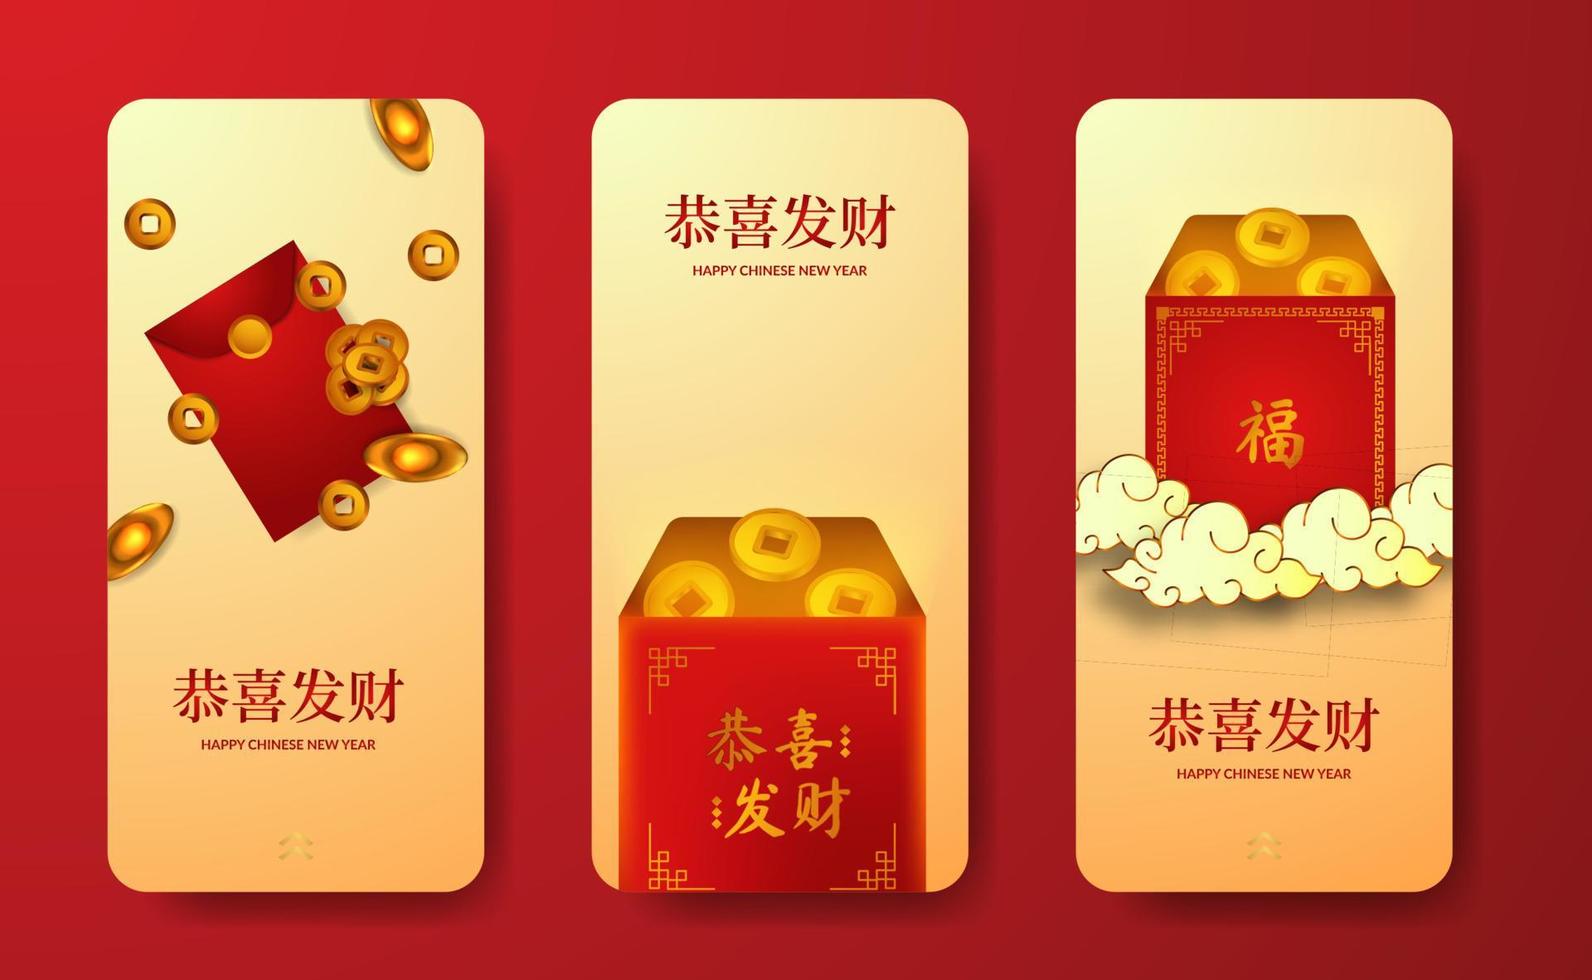 rode envelop zak cadeau rijkdom geluk geluk voor Chinees nieuwjaar social media verhalen sjabloon vector